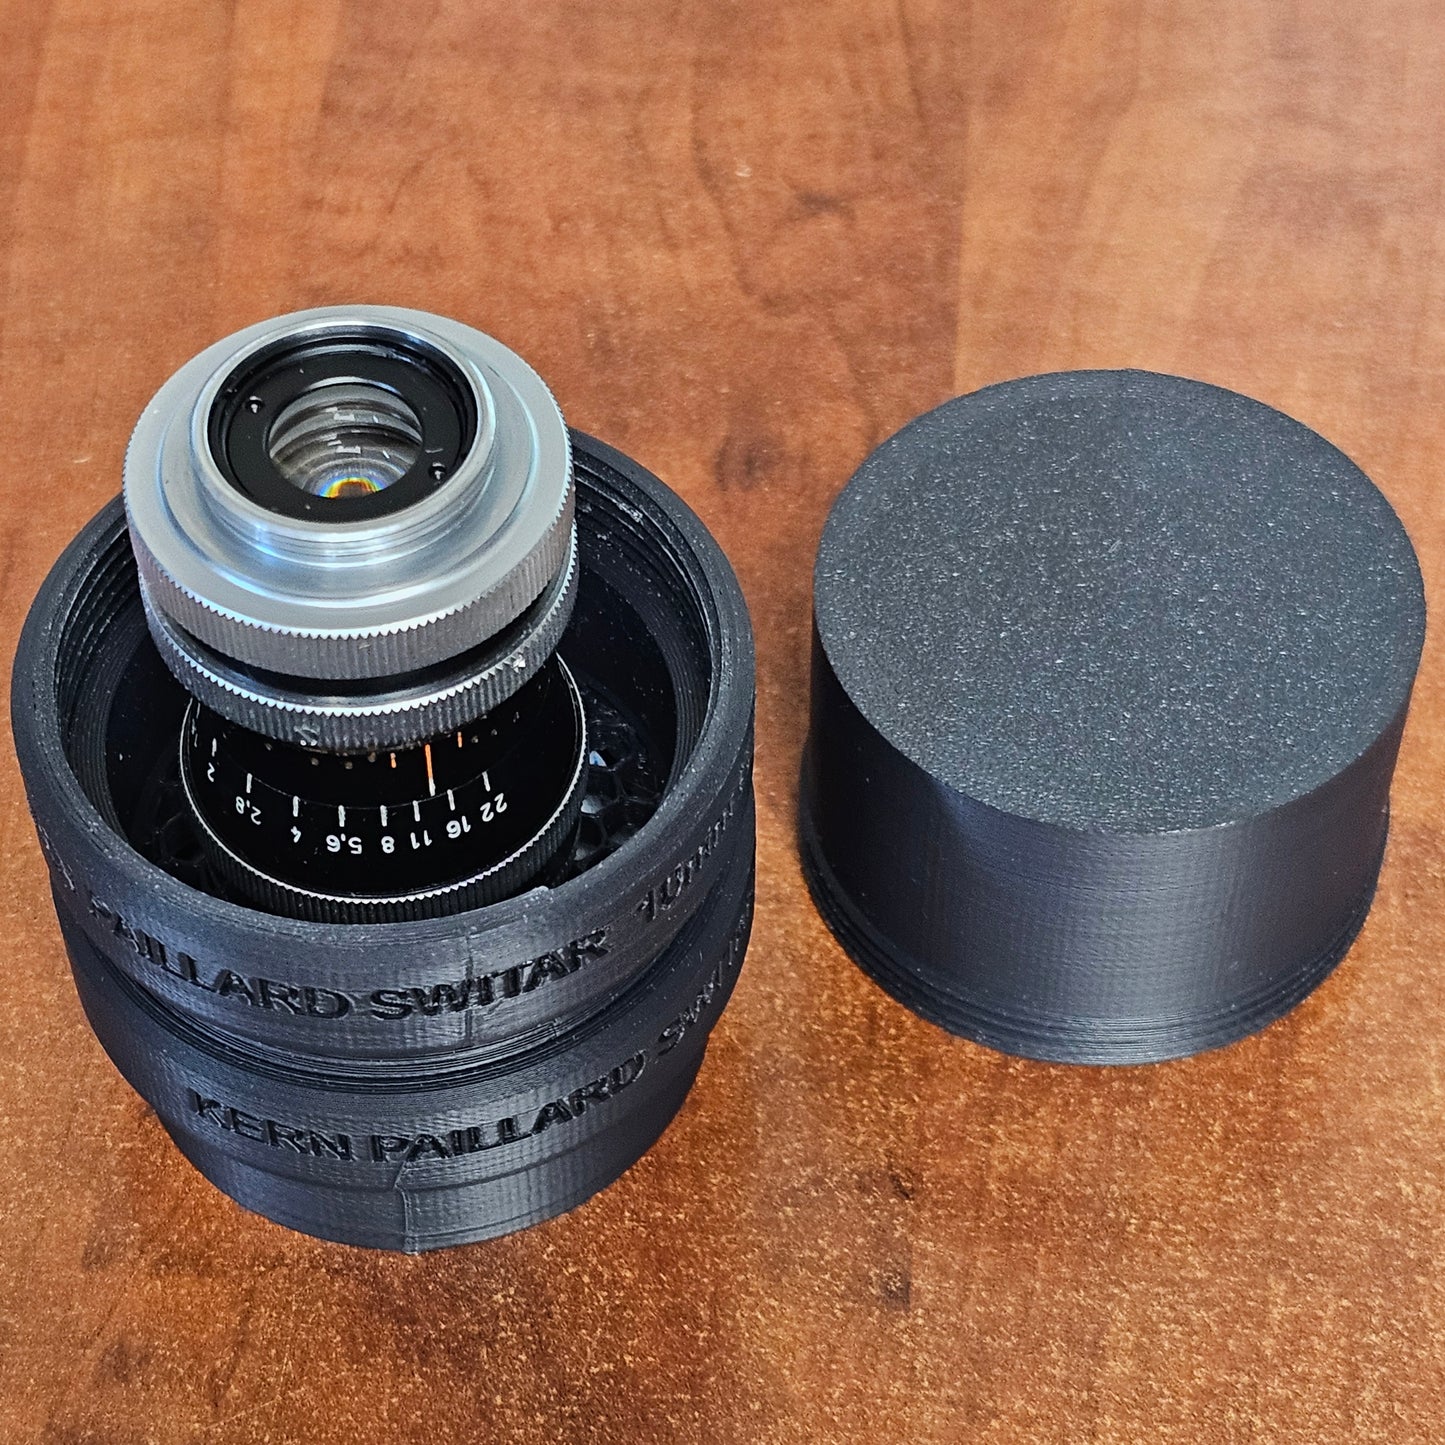 3D Printed Lens Case for Switar 10mm Lens